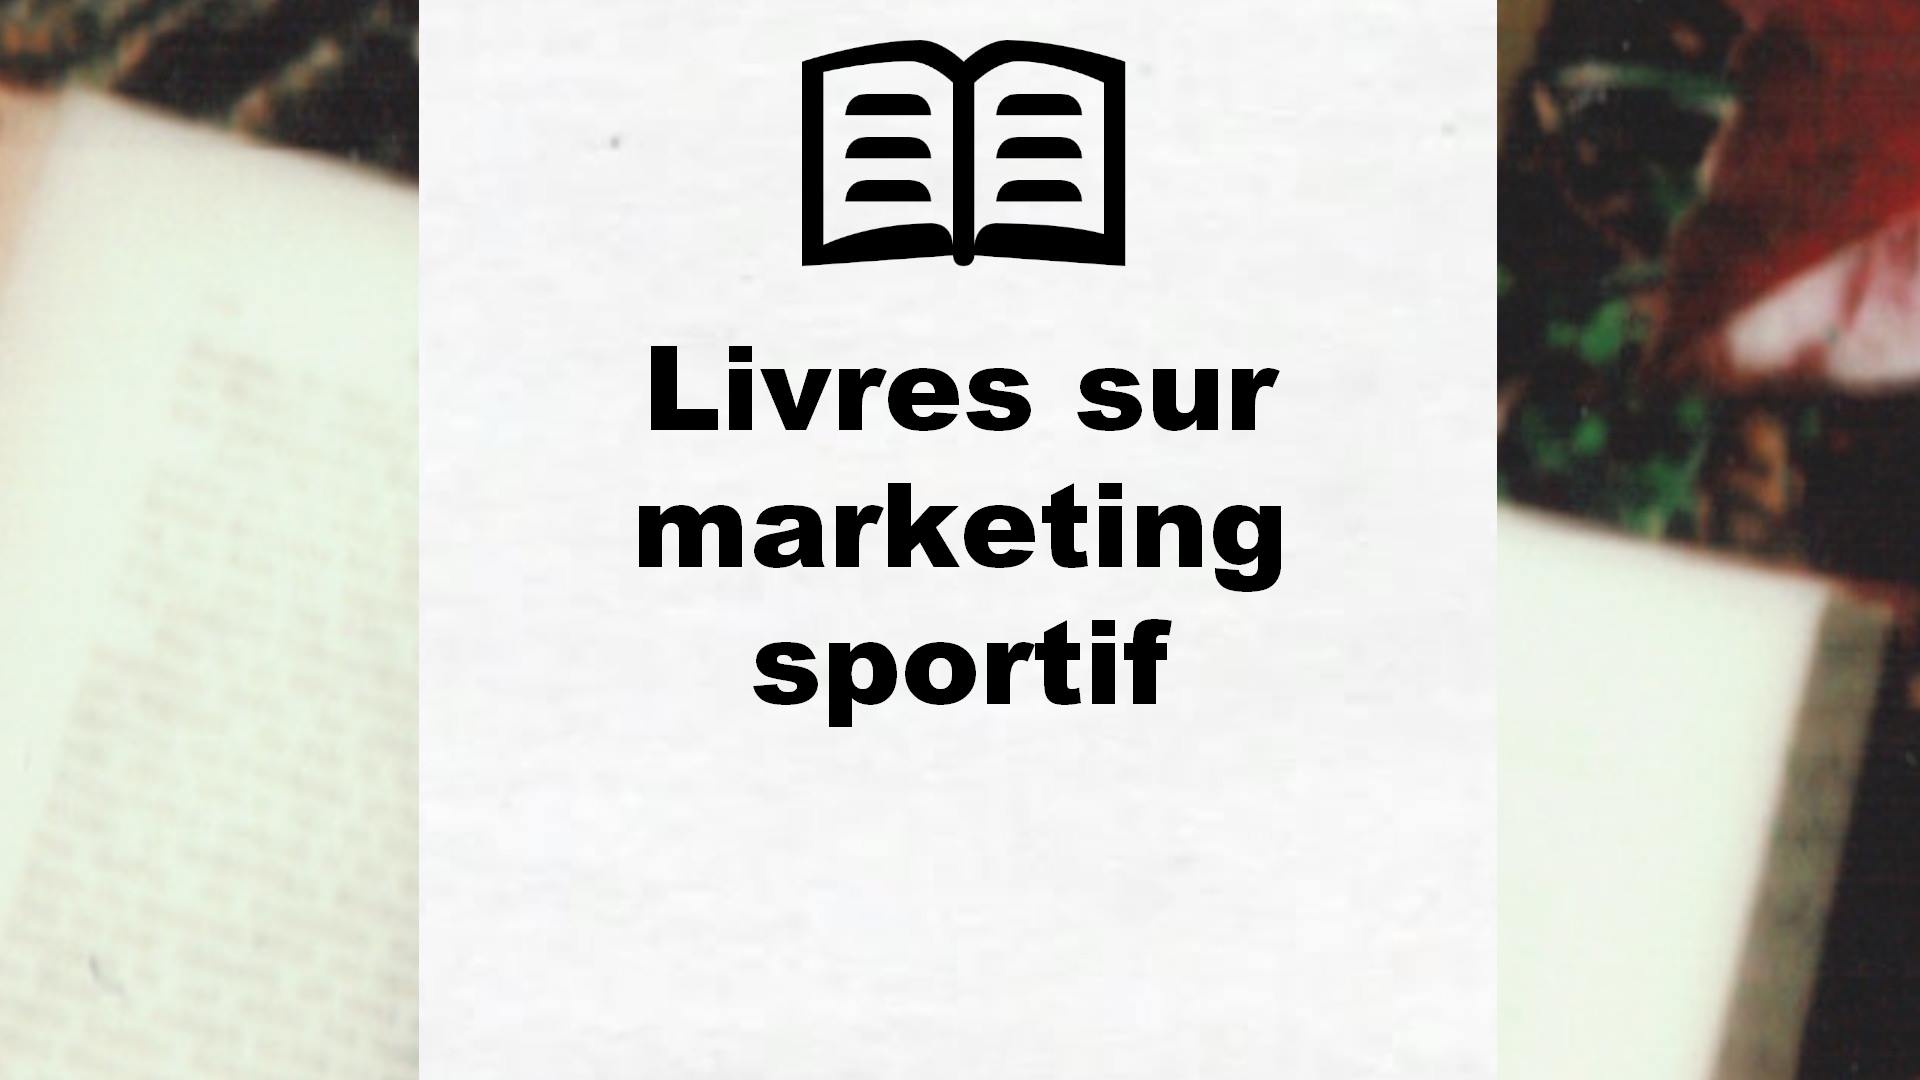 Livres sur marketing sportif